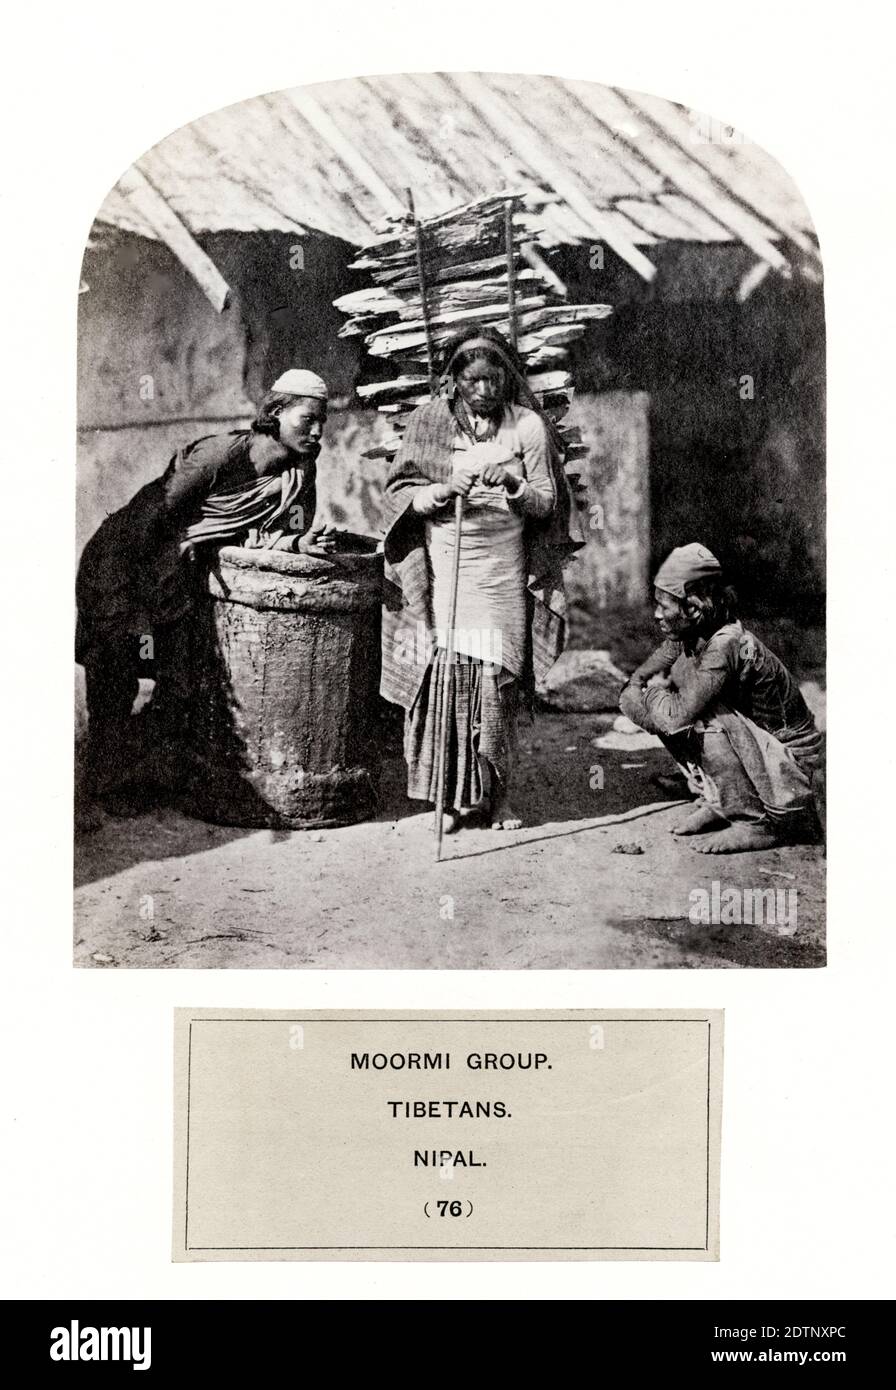 The People of India: Eine Serie von fotografischen Illustrationen, mit beschreibenden Briefedruck, der Rassen und Stämme von Hindustan - veröffentlicht in den 1860er Jahren im Auftrag des Vizekönigs, Lord Canning - Moormi-Gruppe, Tibeter, Nepal. Stockfoto